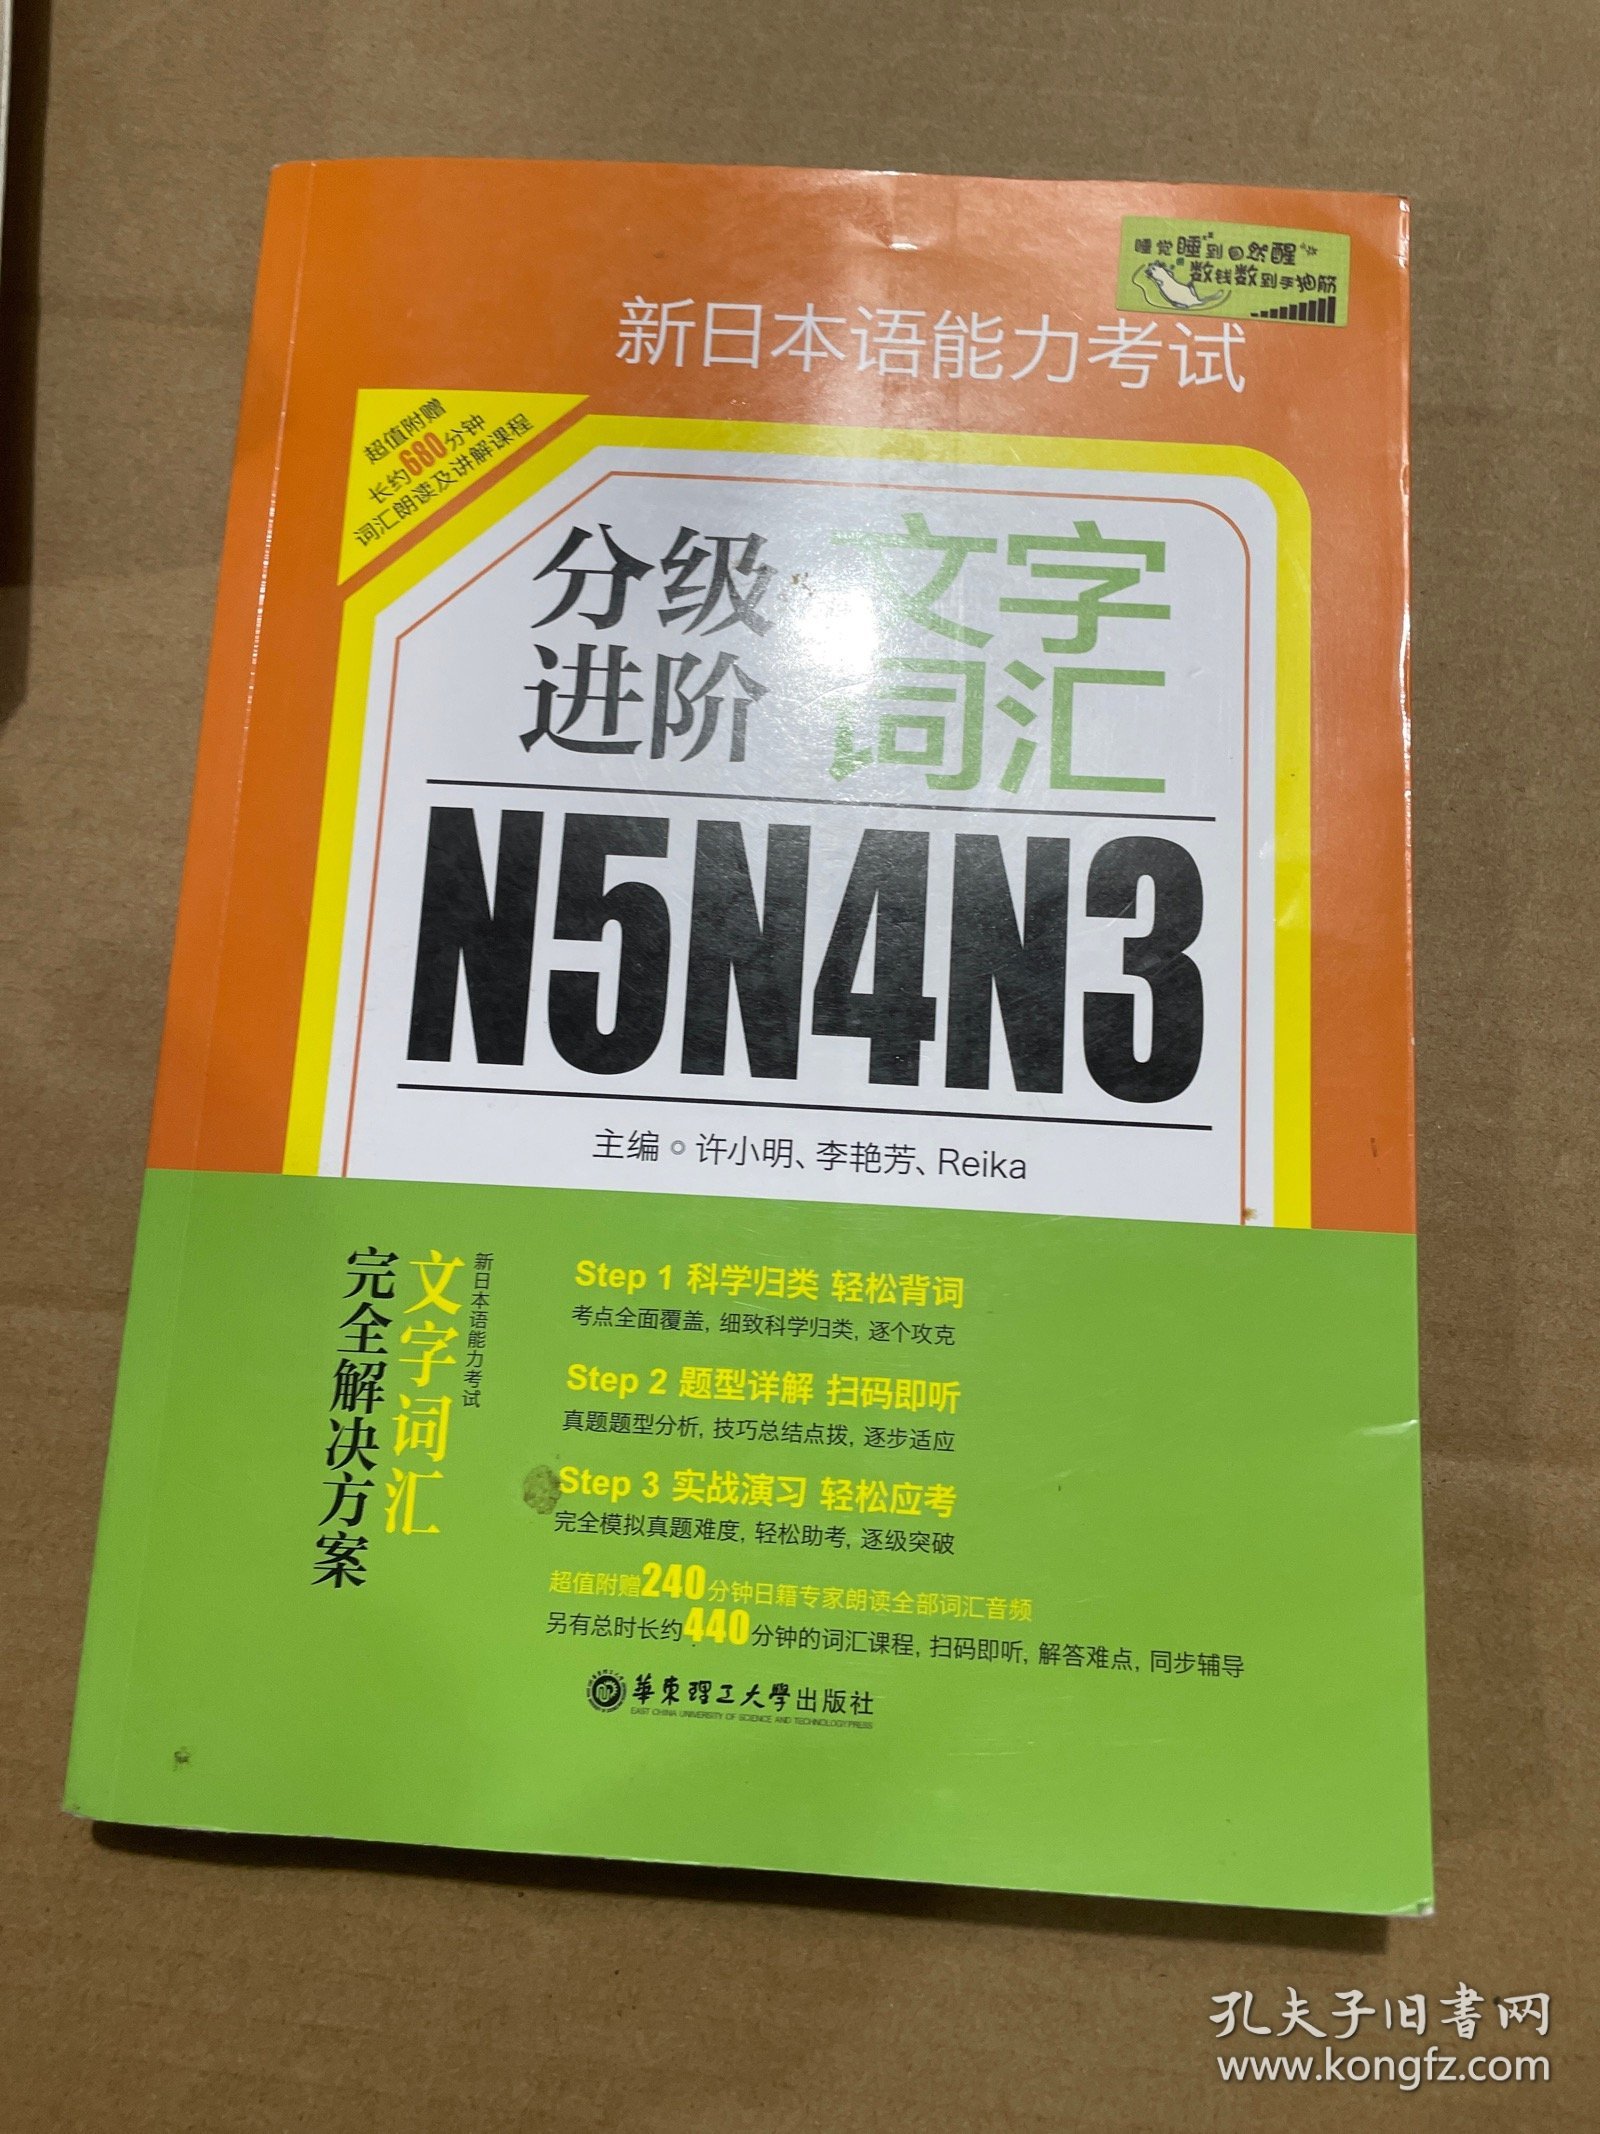 新日本语能力考试N5N4N3分级进阶 文字词汇（附赠音频下载）